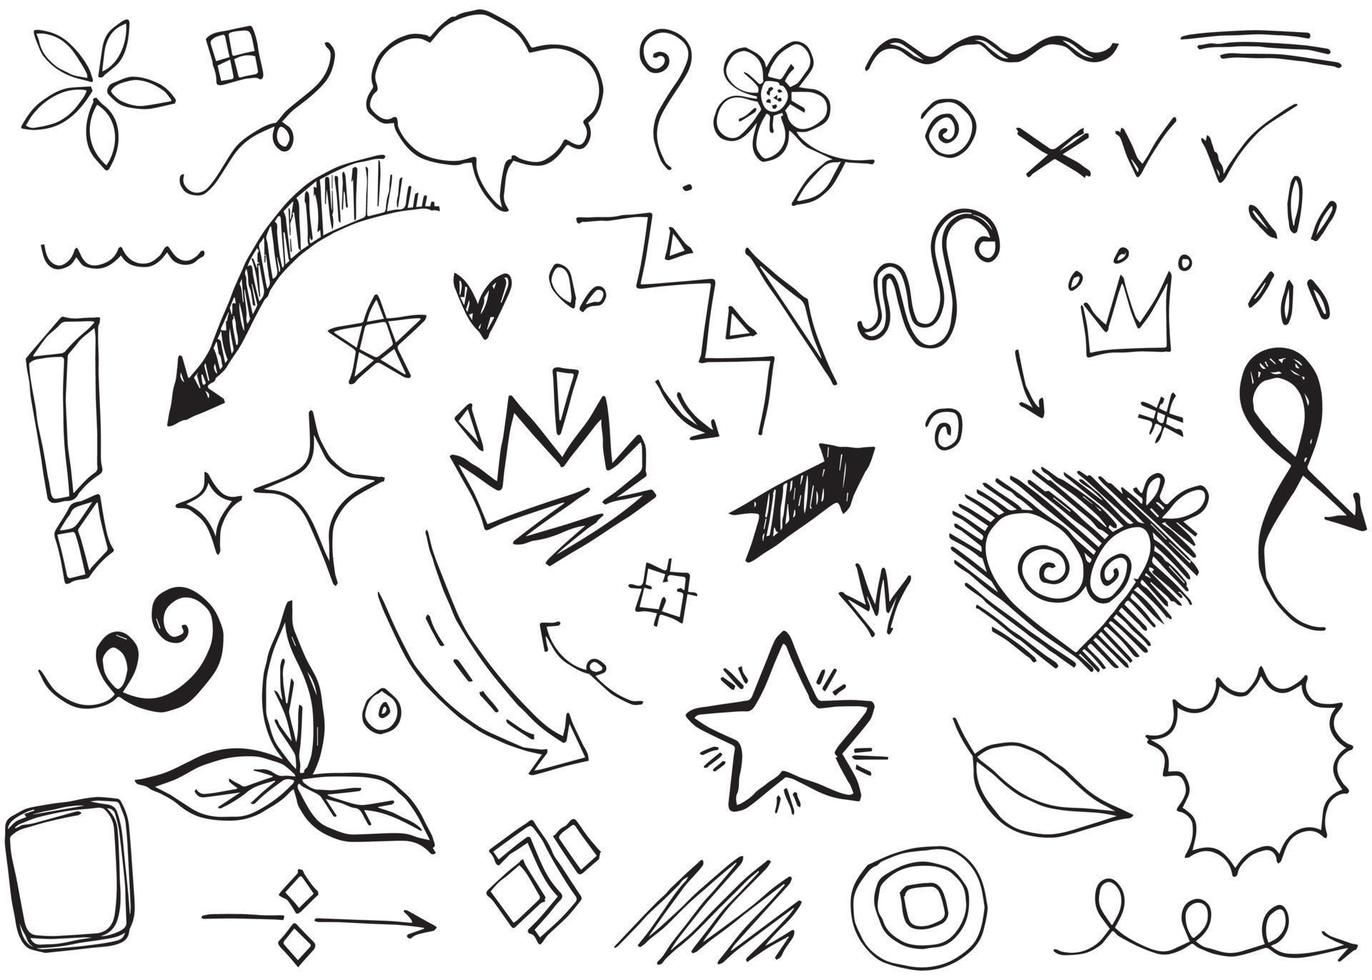 setas abstratas, fitas, coroas, corações, explosões e outros elementos em estilo desenhado à mão para design de conceito. ilustração de doodle. modelo de vetor para decoração